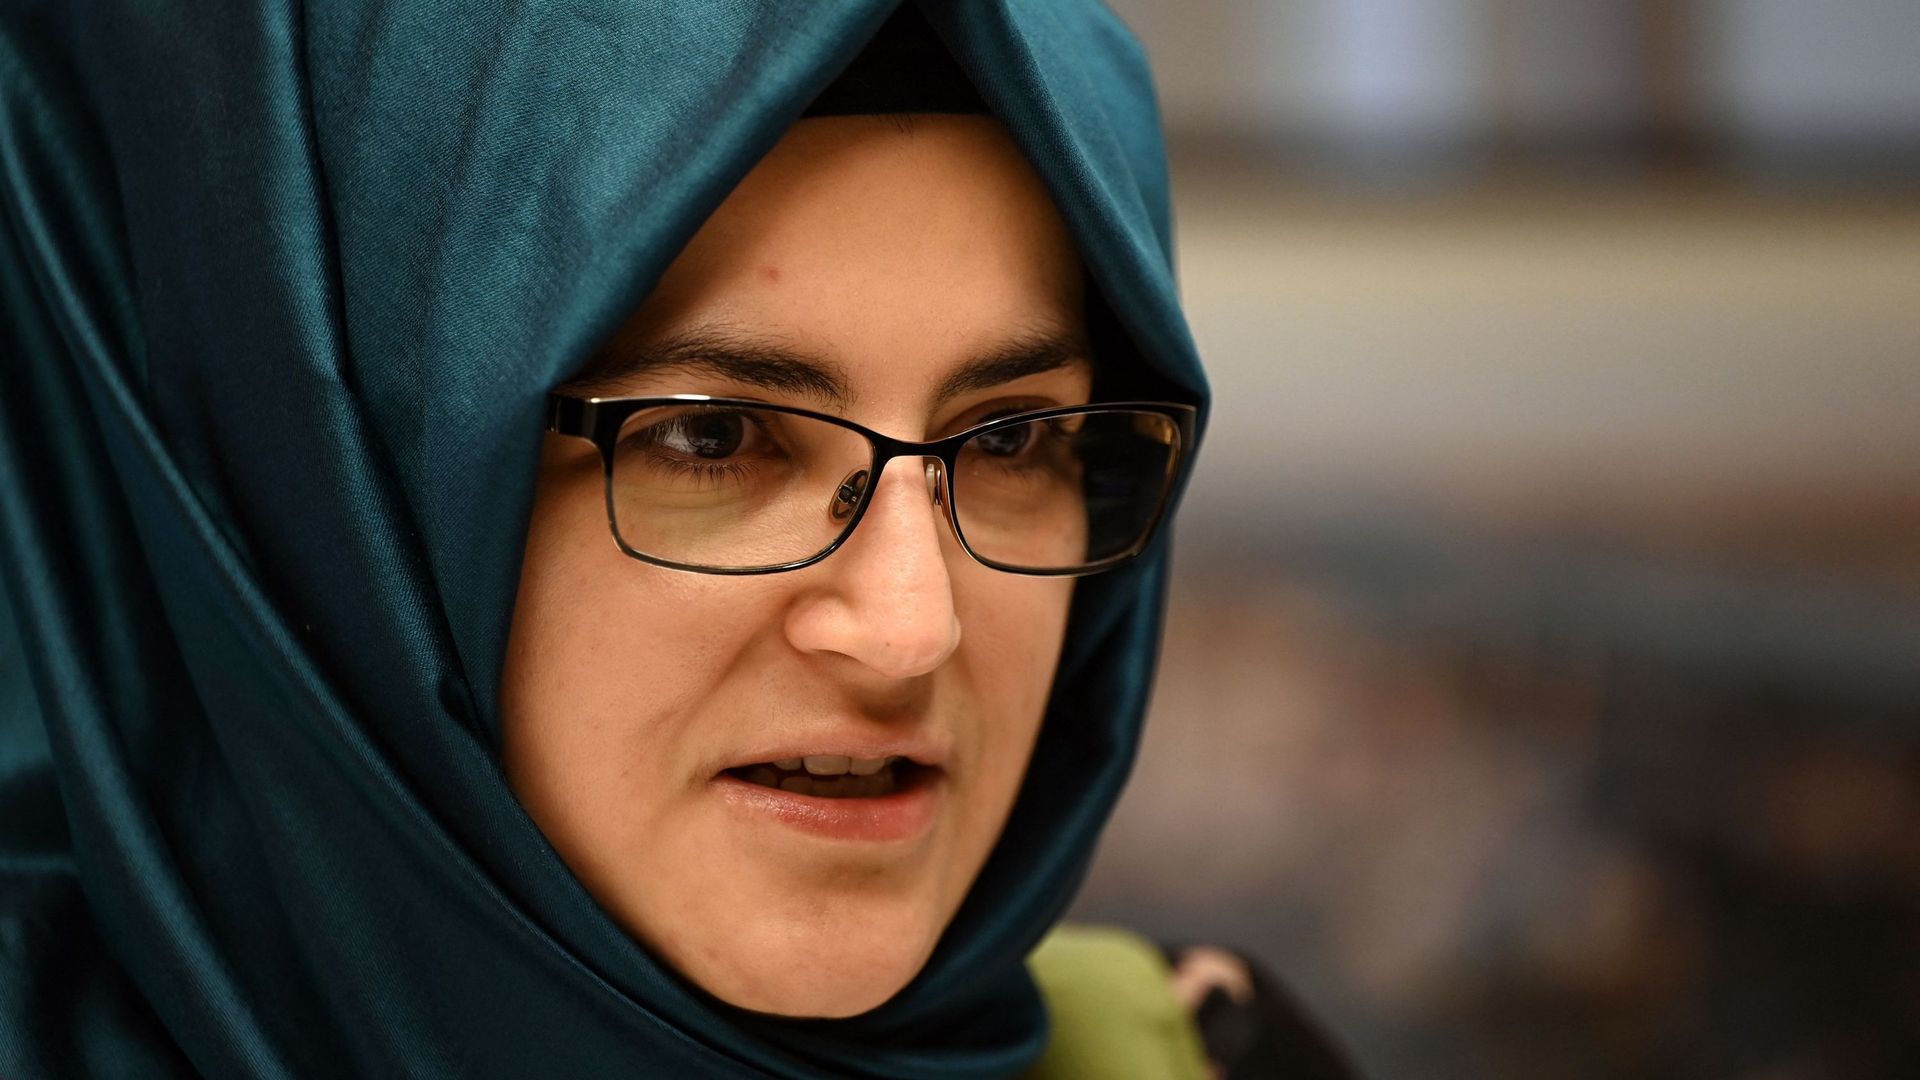 Hatice cenzig, la fiancée du journaliste Jamal Khashoggi assassiné dans le consulat d’Arabie saoudite à Istanbul